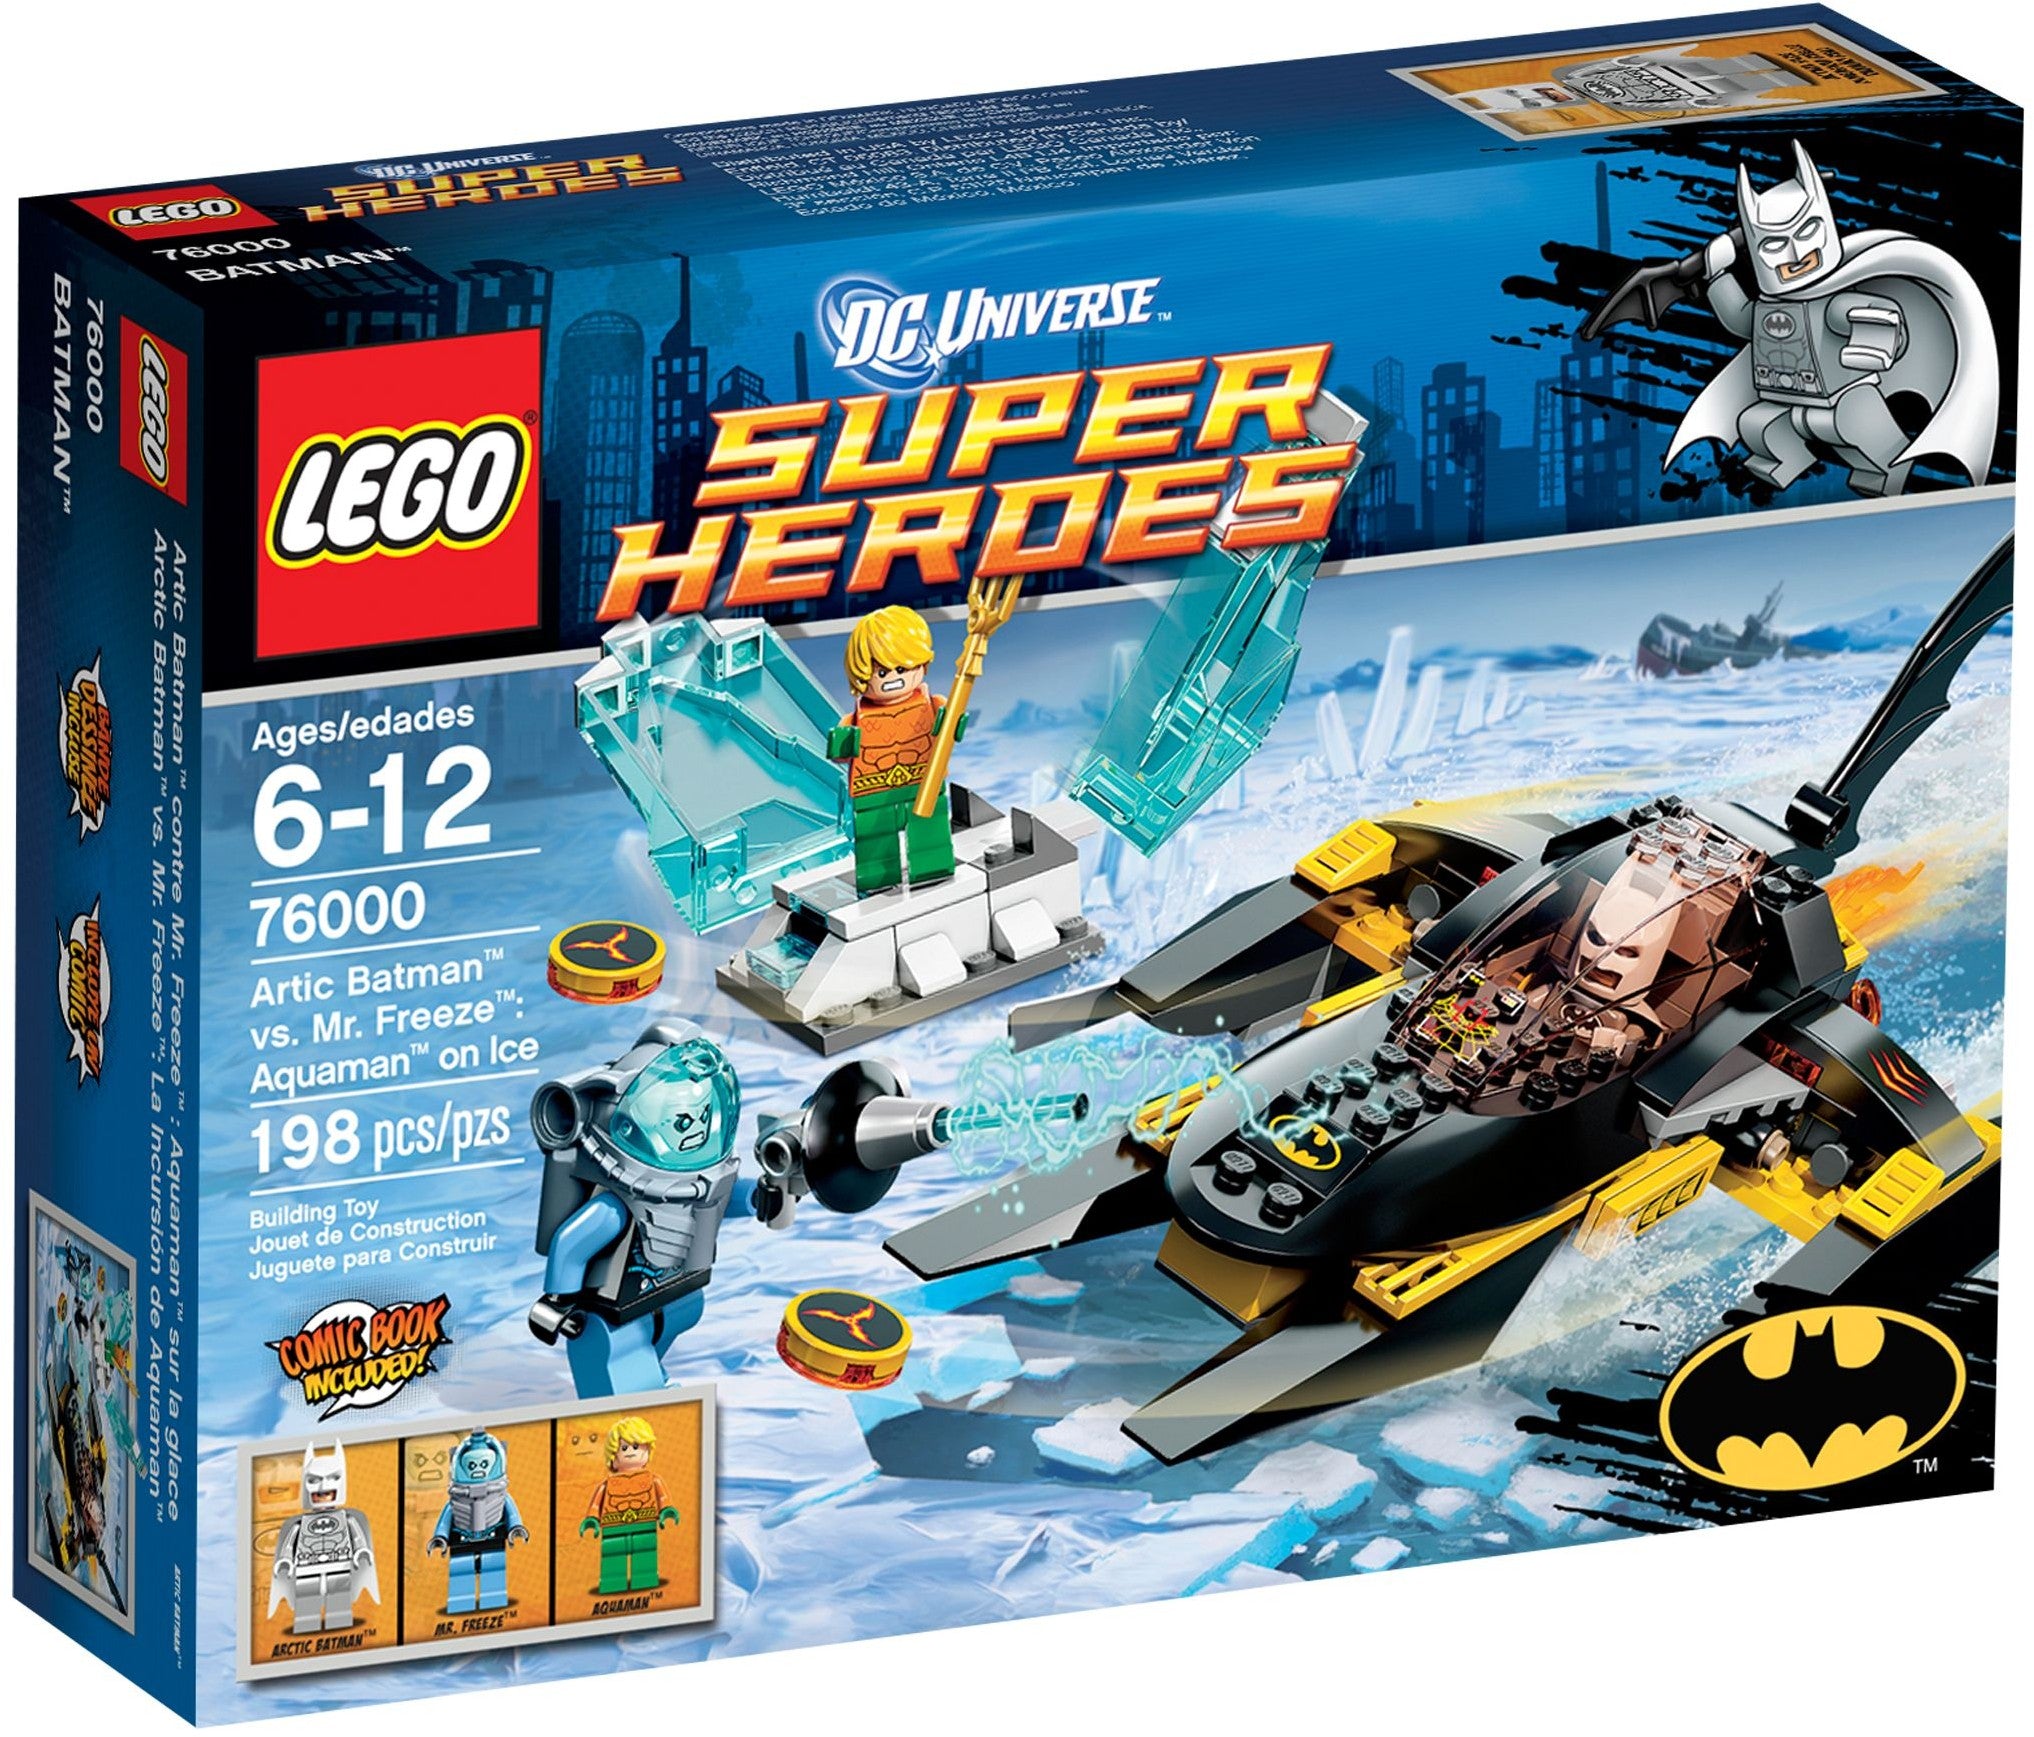 Lego Super Heroes 76000 - Arctic Batman vs. Mr. Freeze: Aquaman on Ice